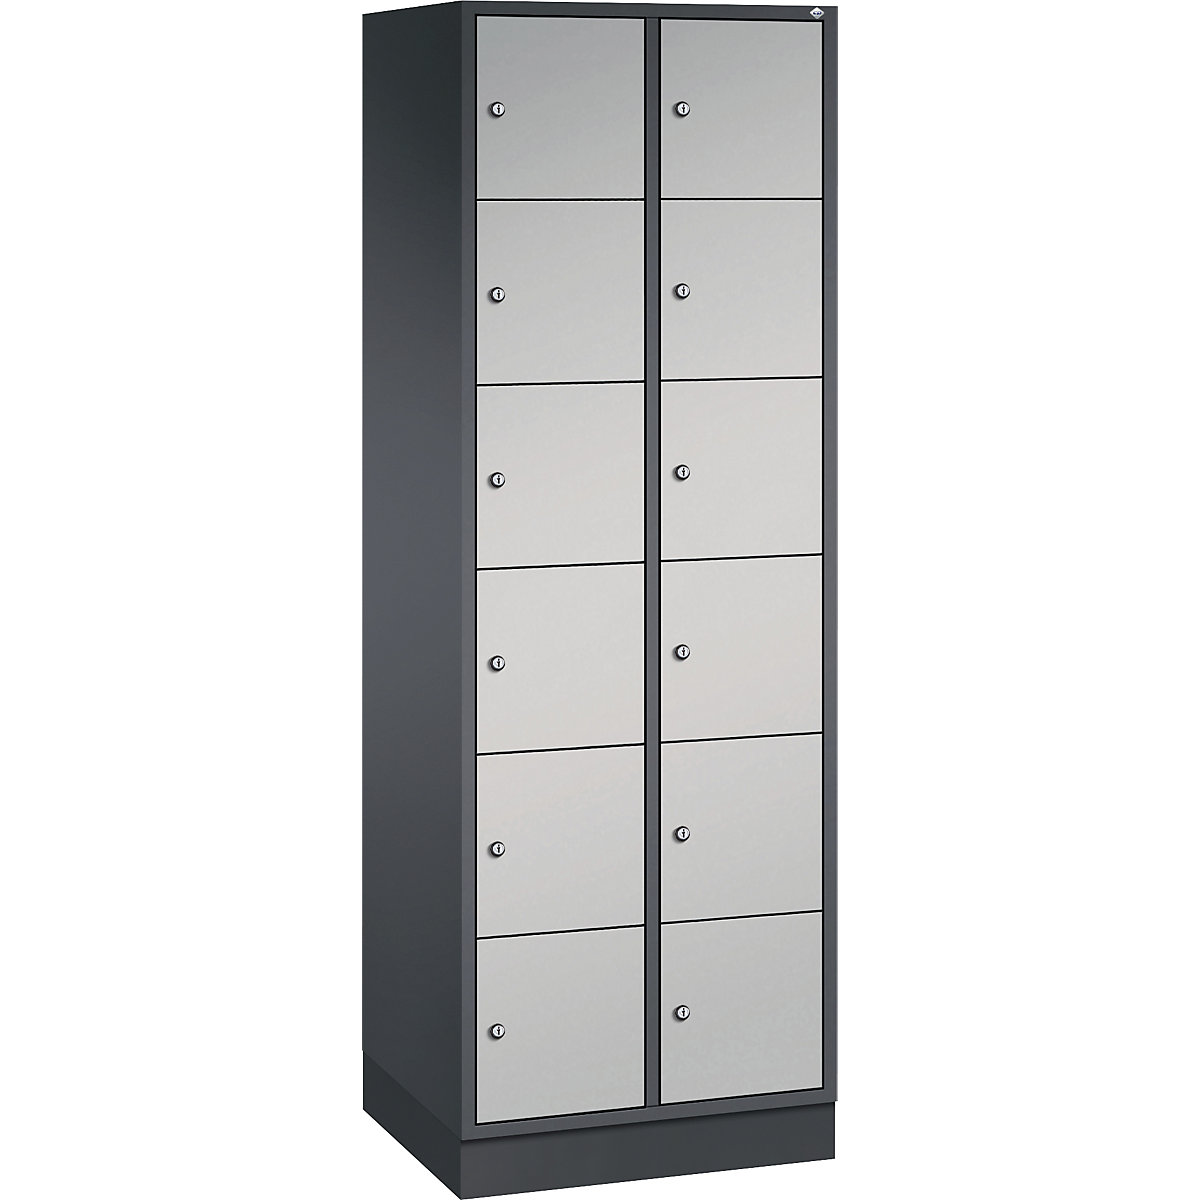 Vestiaire multicases en acier INTRO, casiers hauteur 285 mm – C+P, l x p 620 x 500 mm, 12 casiers, corps gris noir, portes coloris aluminium-12